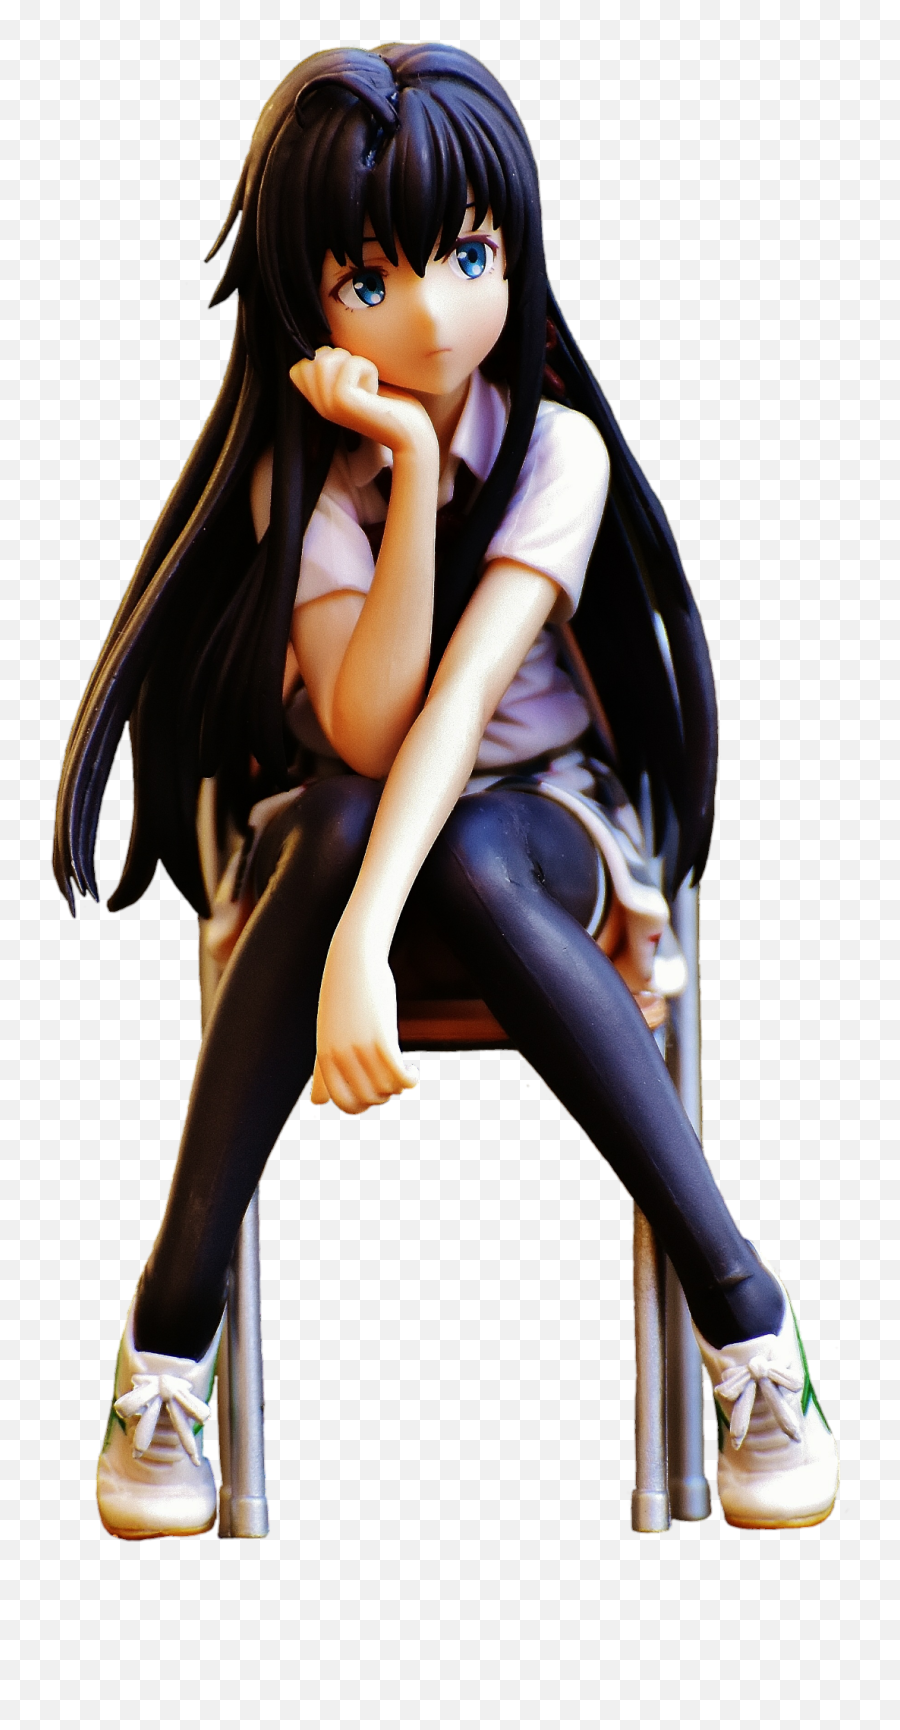 Anime Girl Png - Chair Anime Girl Sitting Down Emoji,Anime Transparent